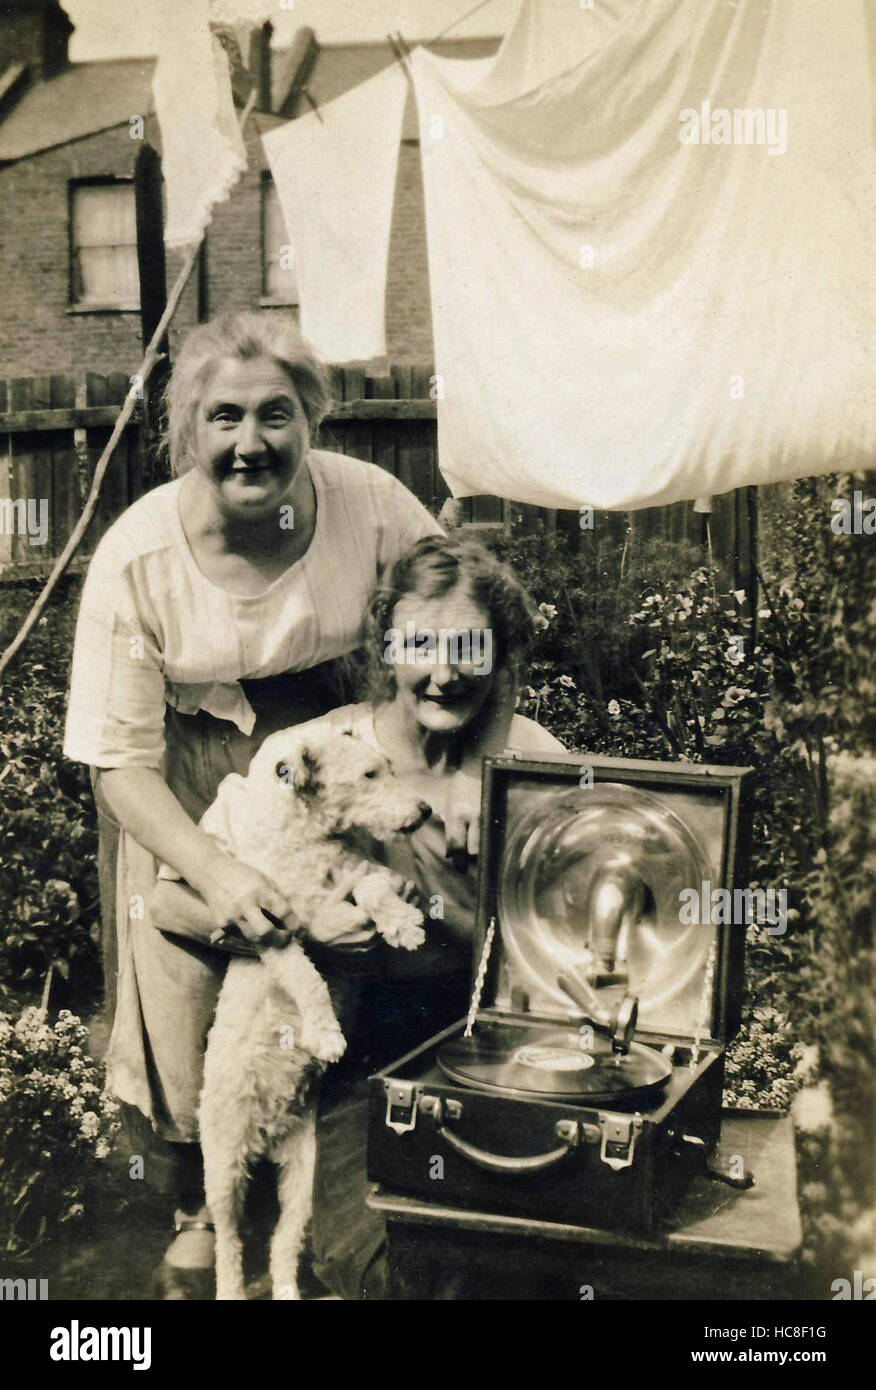 Historisches Archiv Bild der Frau auf der Rückseite Garten mit Grammophon / Spieler aufnehmen und Haustier Hund Stockfoto